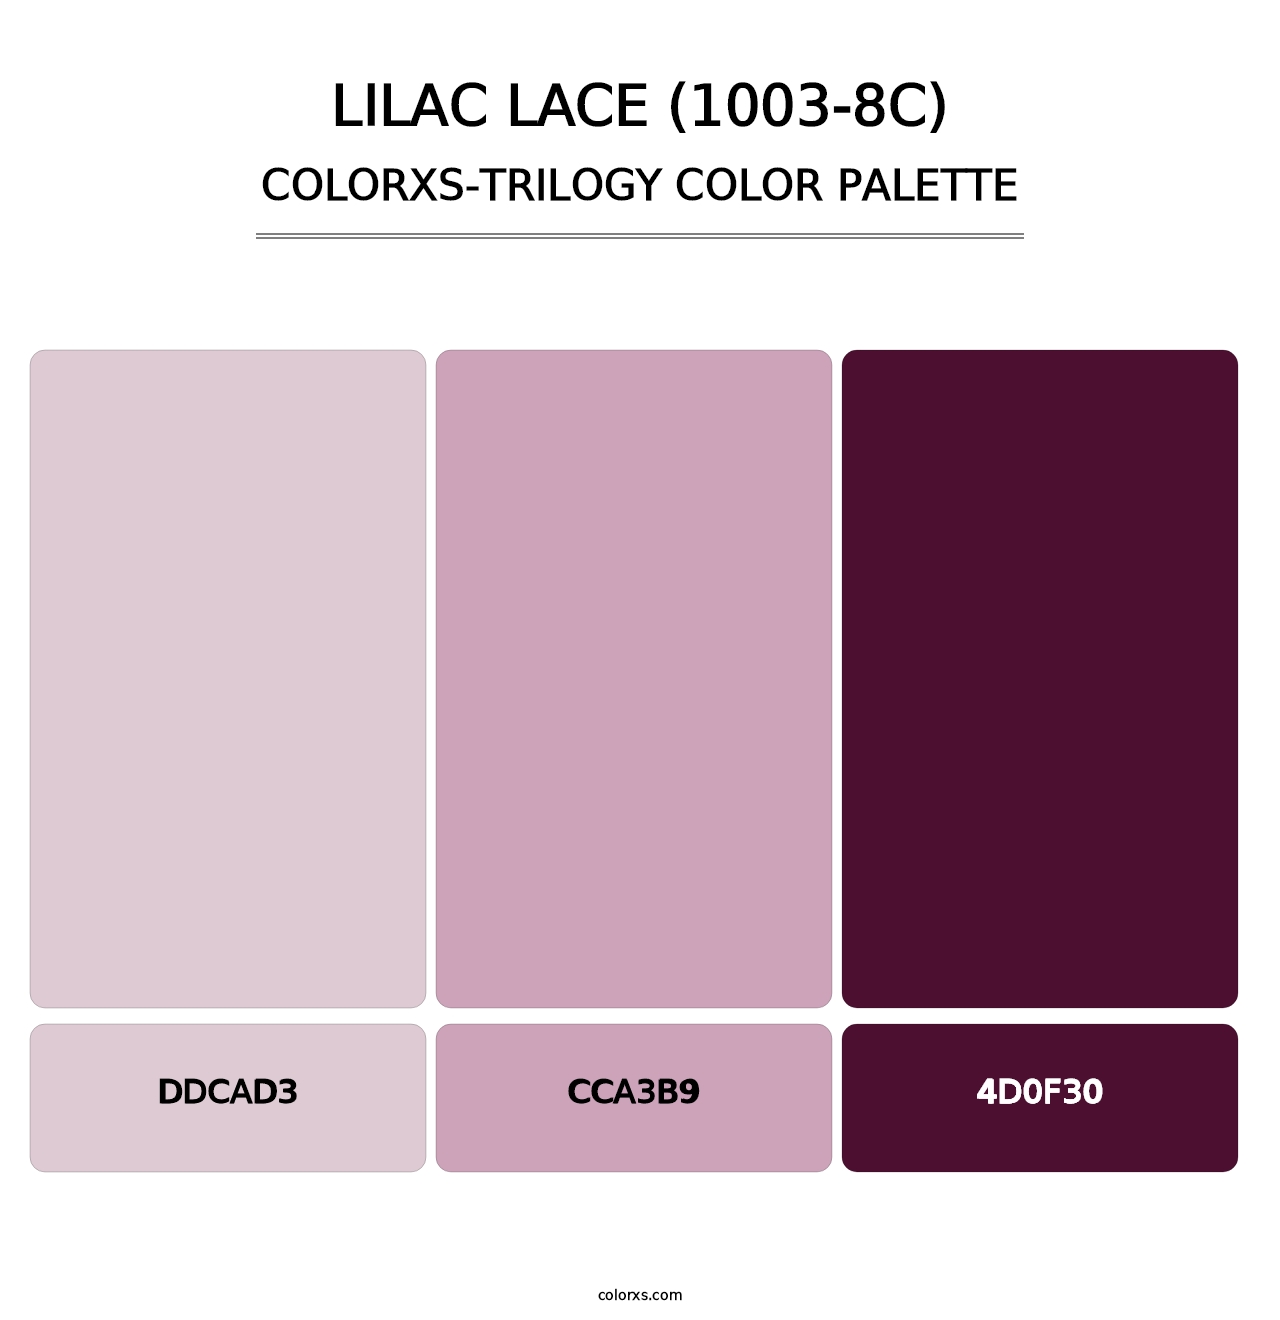 Lilac Lace (1003-8C) - Colorxs Trilogy Palette